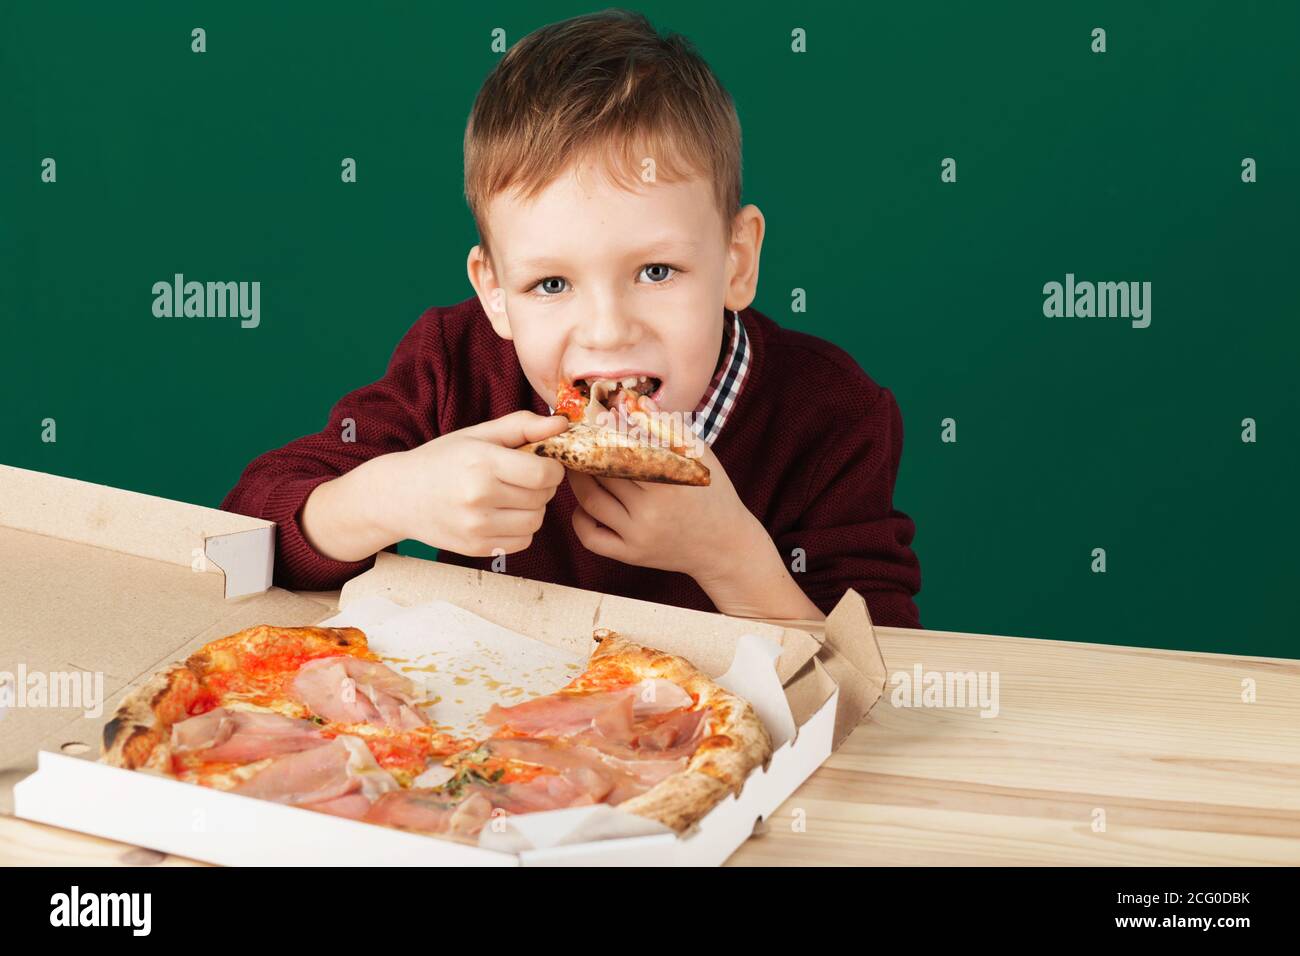 Les enfants mangent de la pizza italienne au café. Le garçon de l'école mange de la pizza pour le déjeuner. Concept de repas malsain pour enfant. Enfants affamés. Recette de pizza. Enfant mangeant pizz Banque D'Images